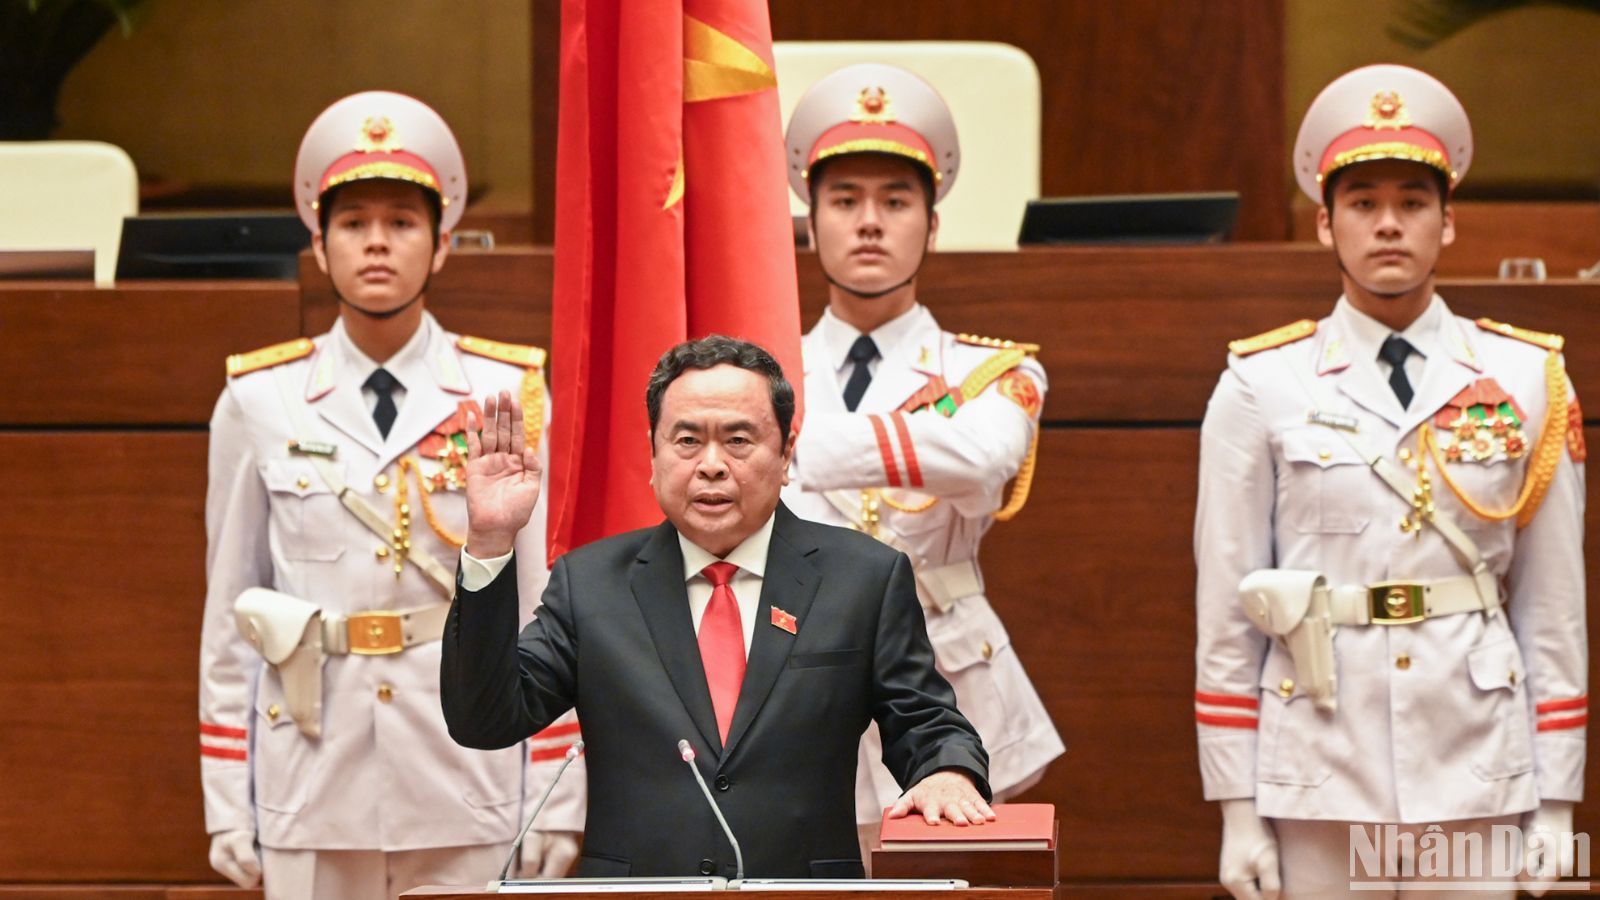 Đồng chí Trần Thanh Mẫn tuyên thệ nhậm chức Chủ tịch Quốc hội nước Cộng hòa xã hội Chủ nghĩa Việt Nam nhiệm kỳ 2021-2026.